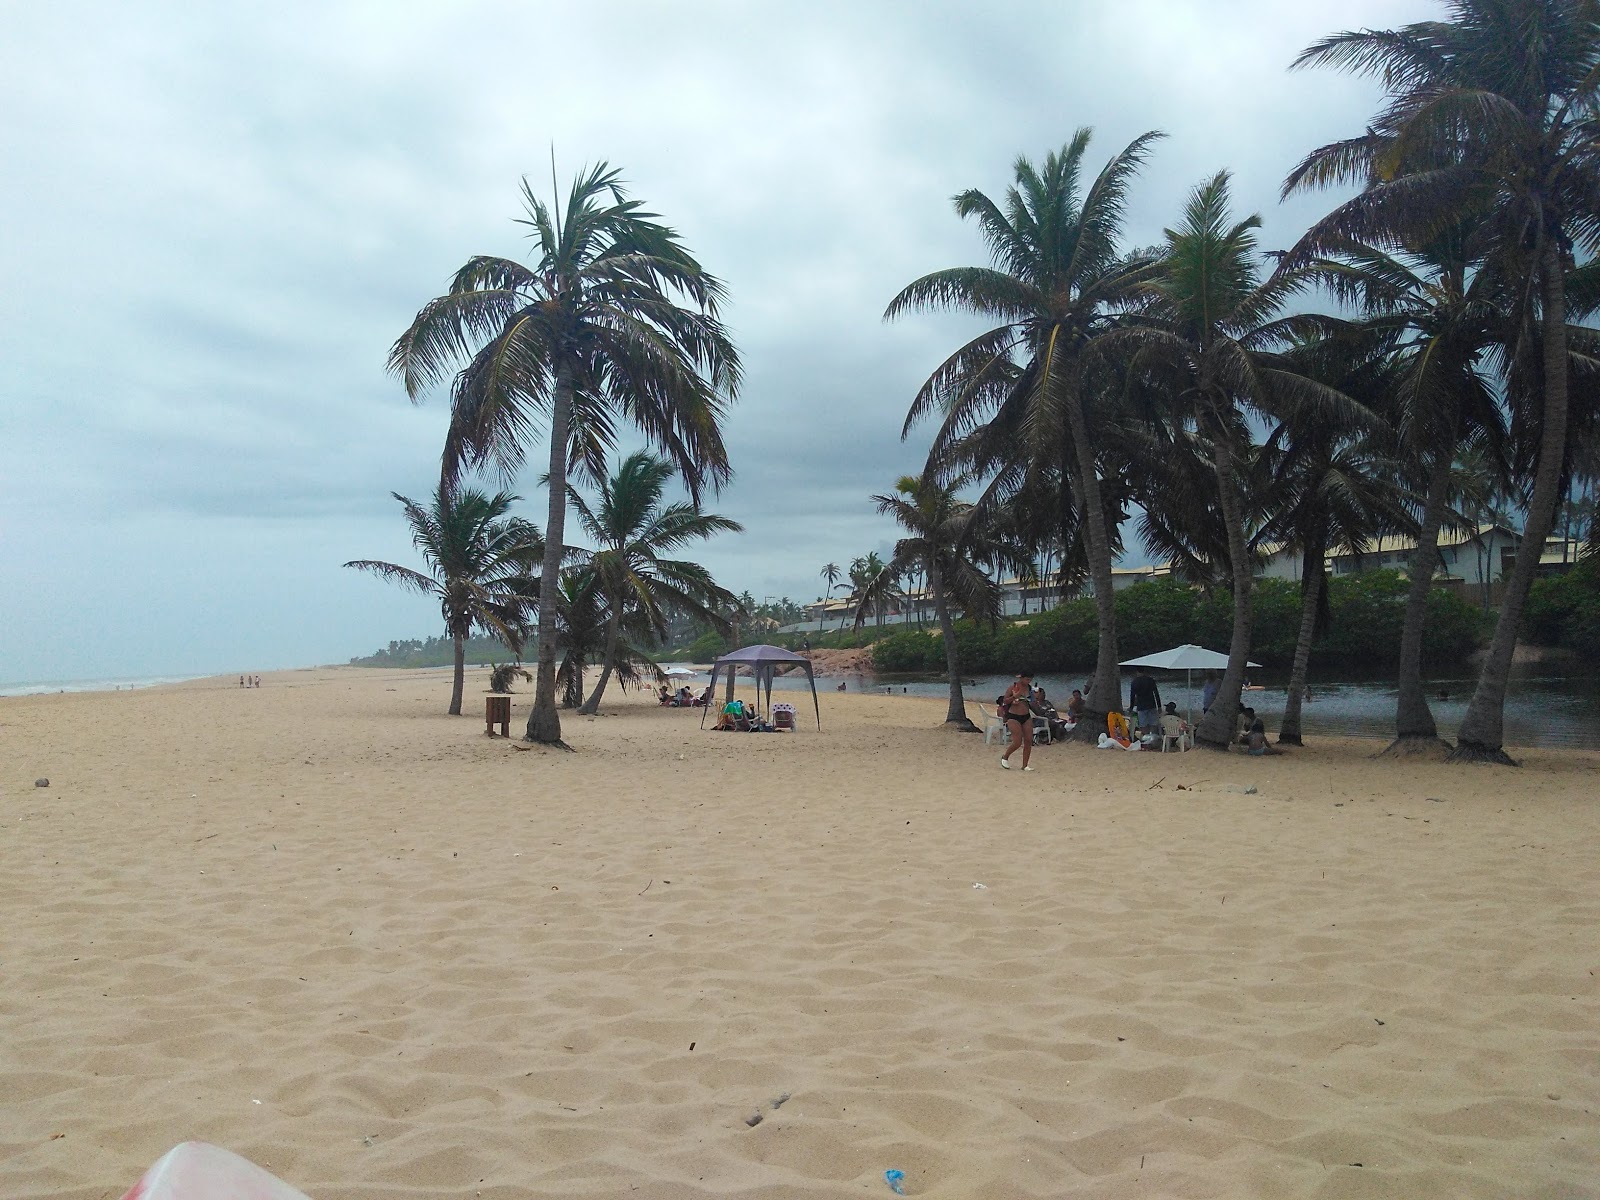 Praia de Imbassai的照片 具有非常干净级别的清洁度